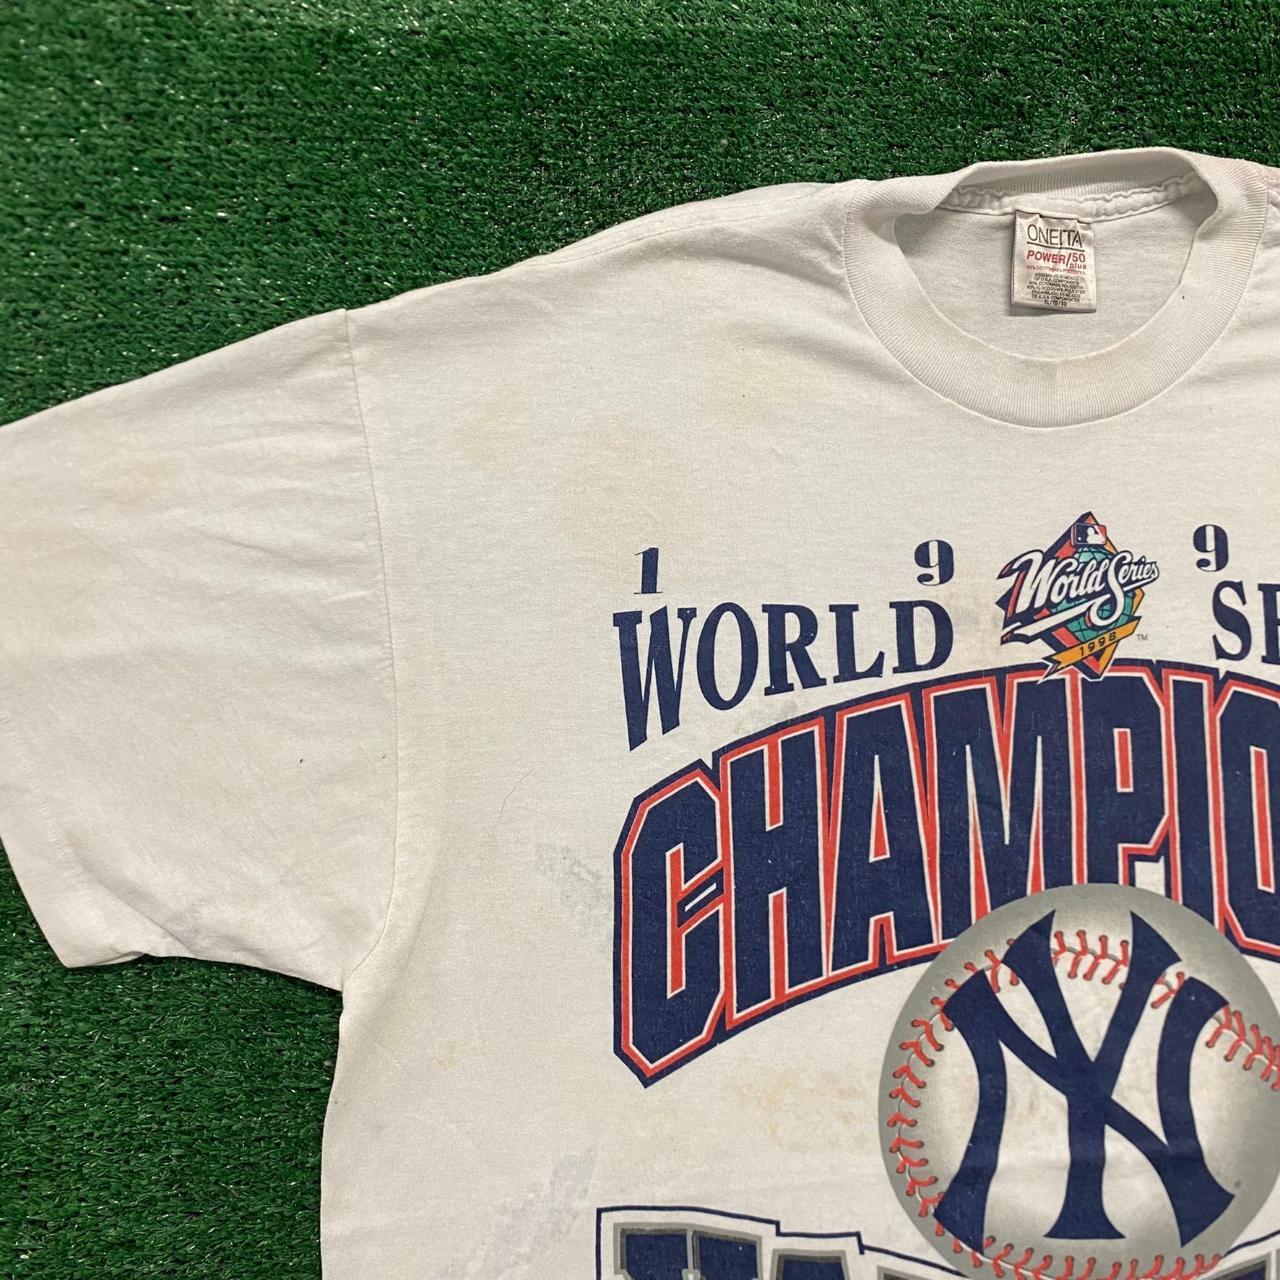 Vintage New York Yankees 1998 World Series Champions Shirt Oneita